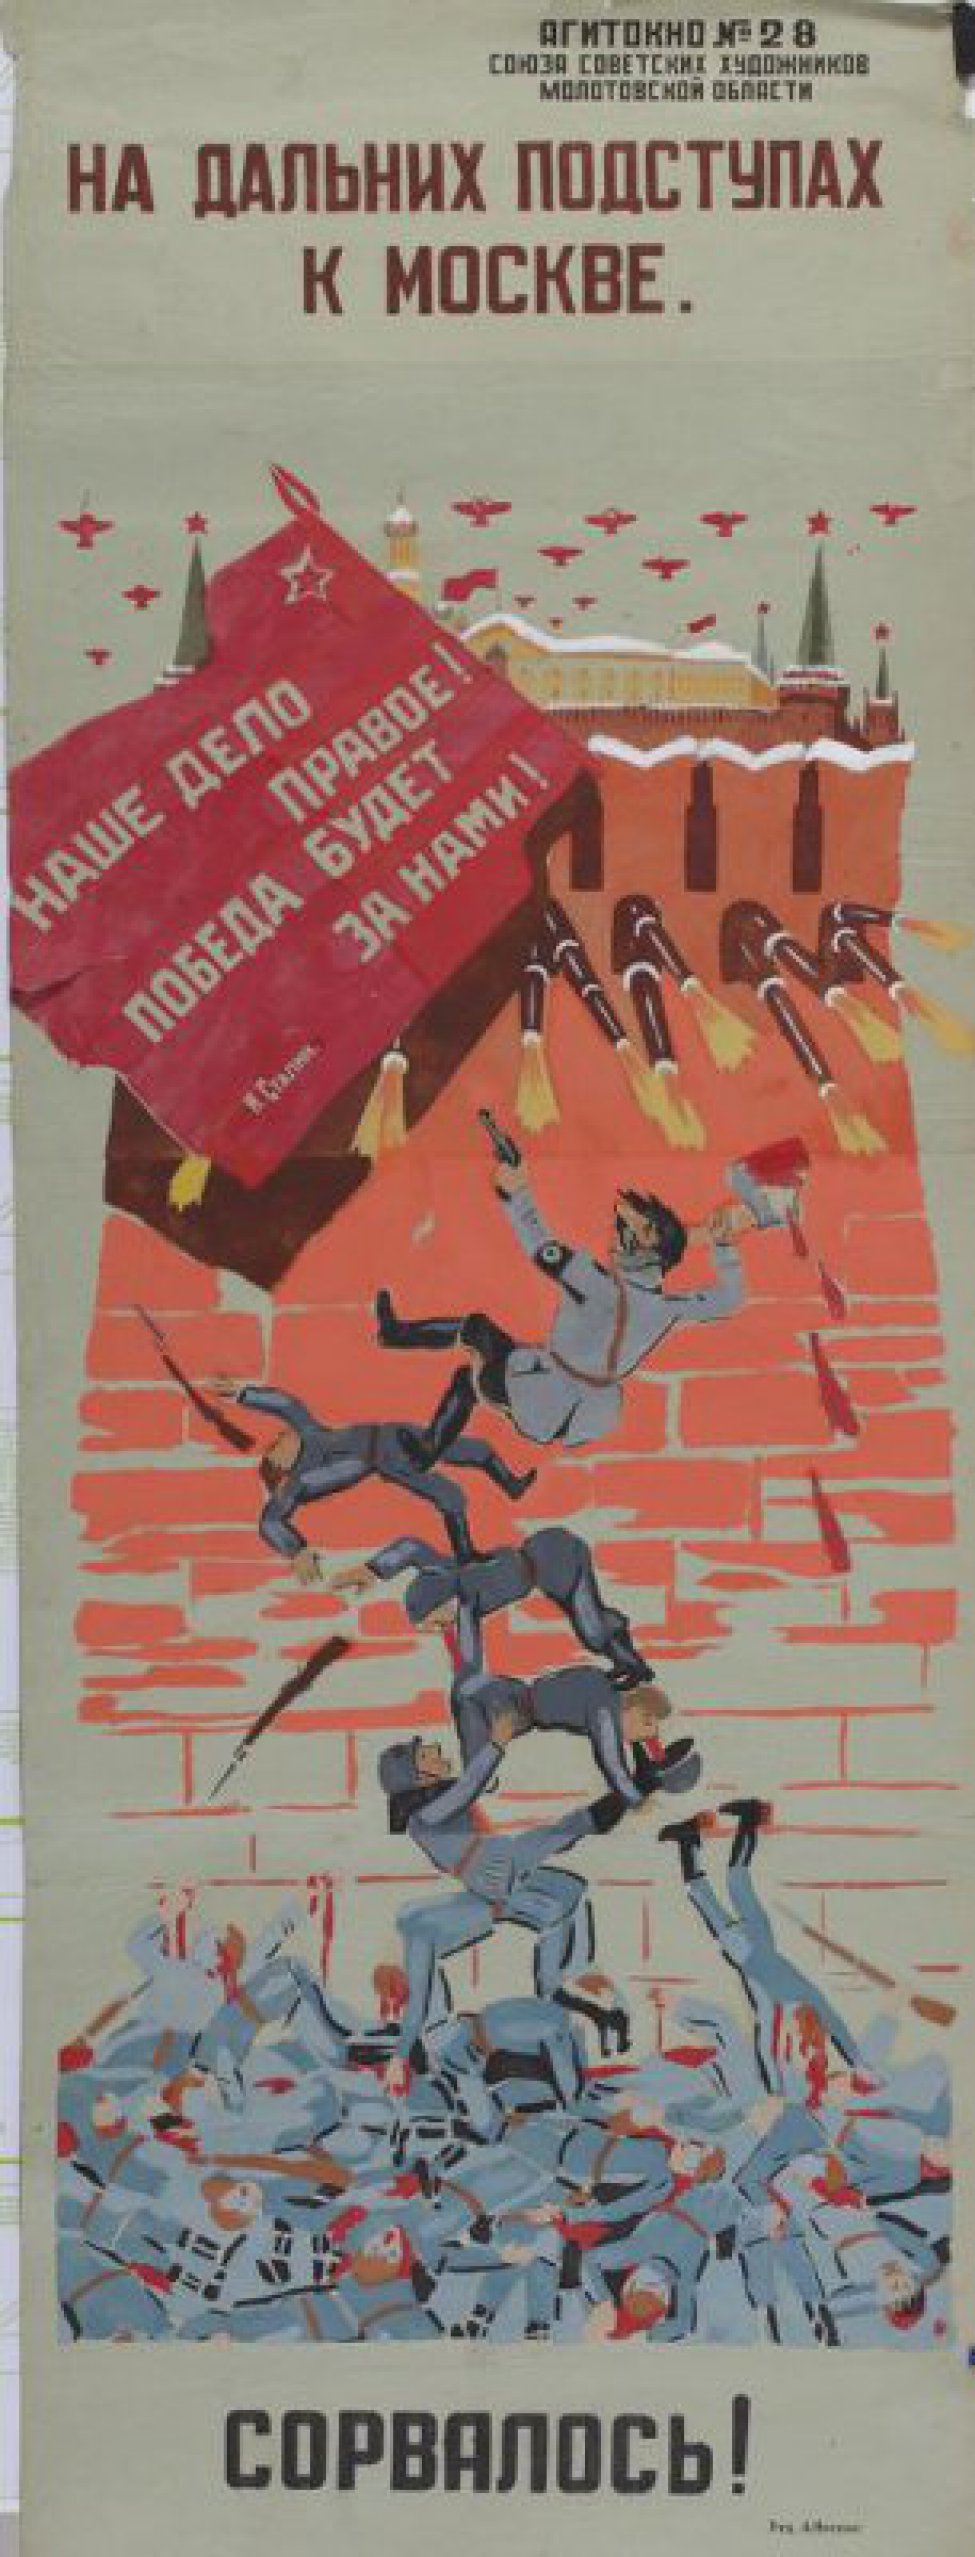 Изображено: на стены Кремля лезут и срываются от огня пушек фашисты, внизу - куча фашистских трупов; внизу надпись: "сорвалось!"